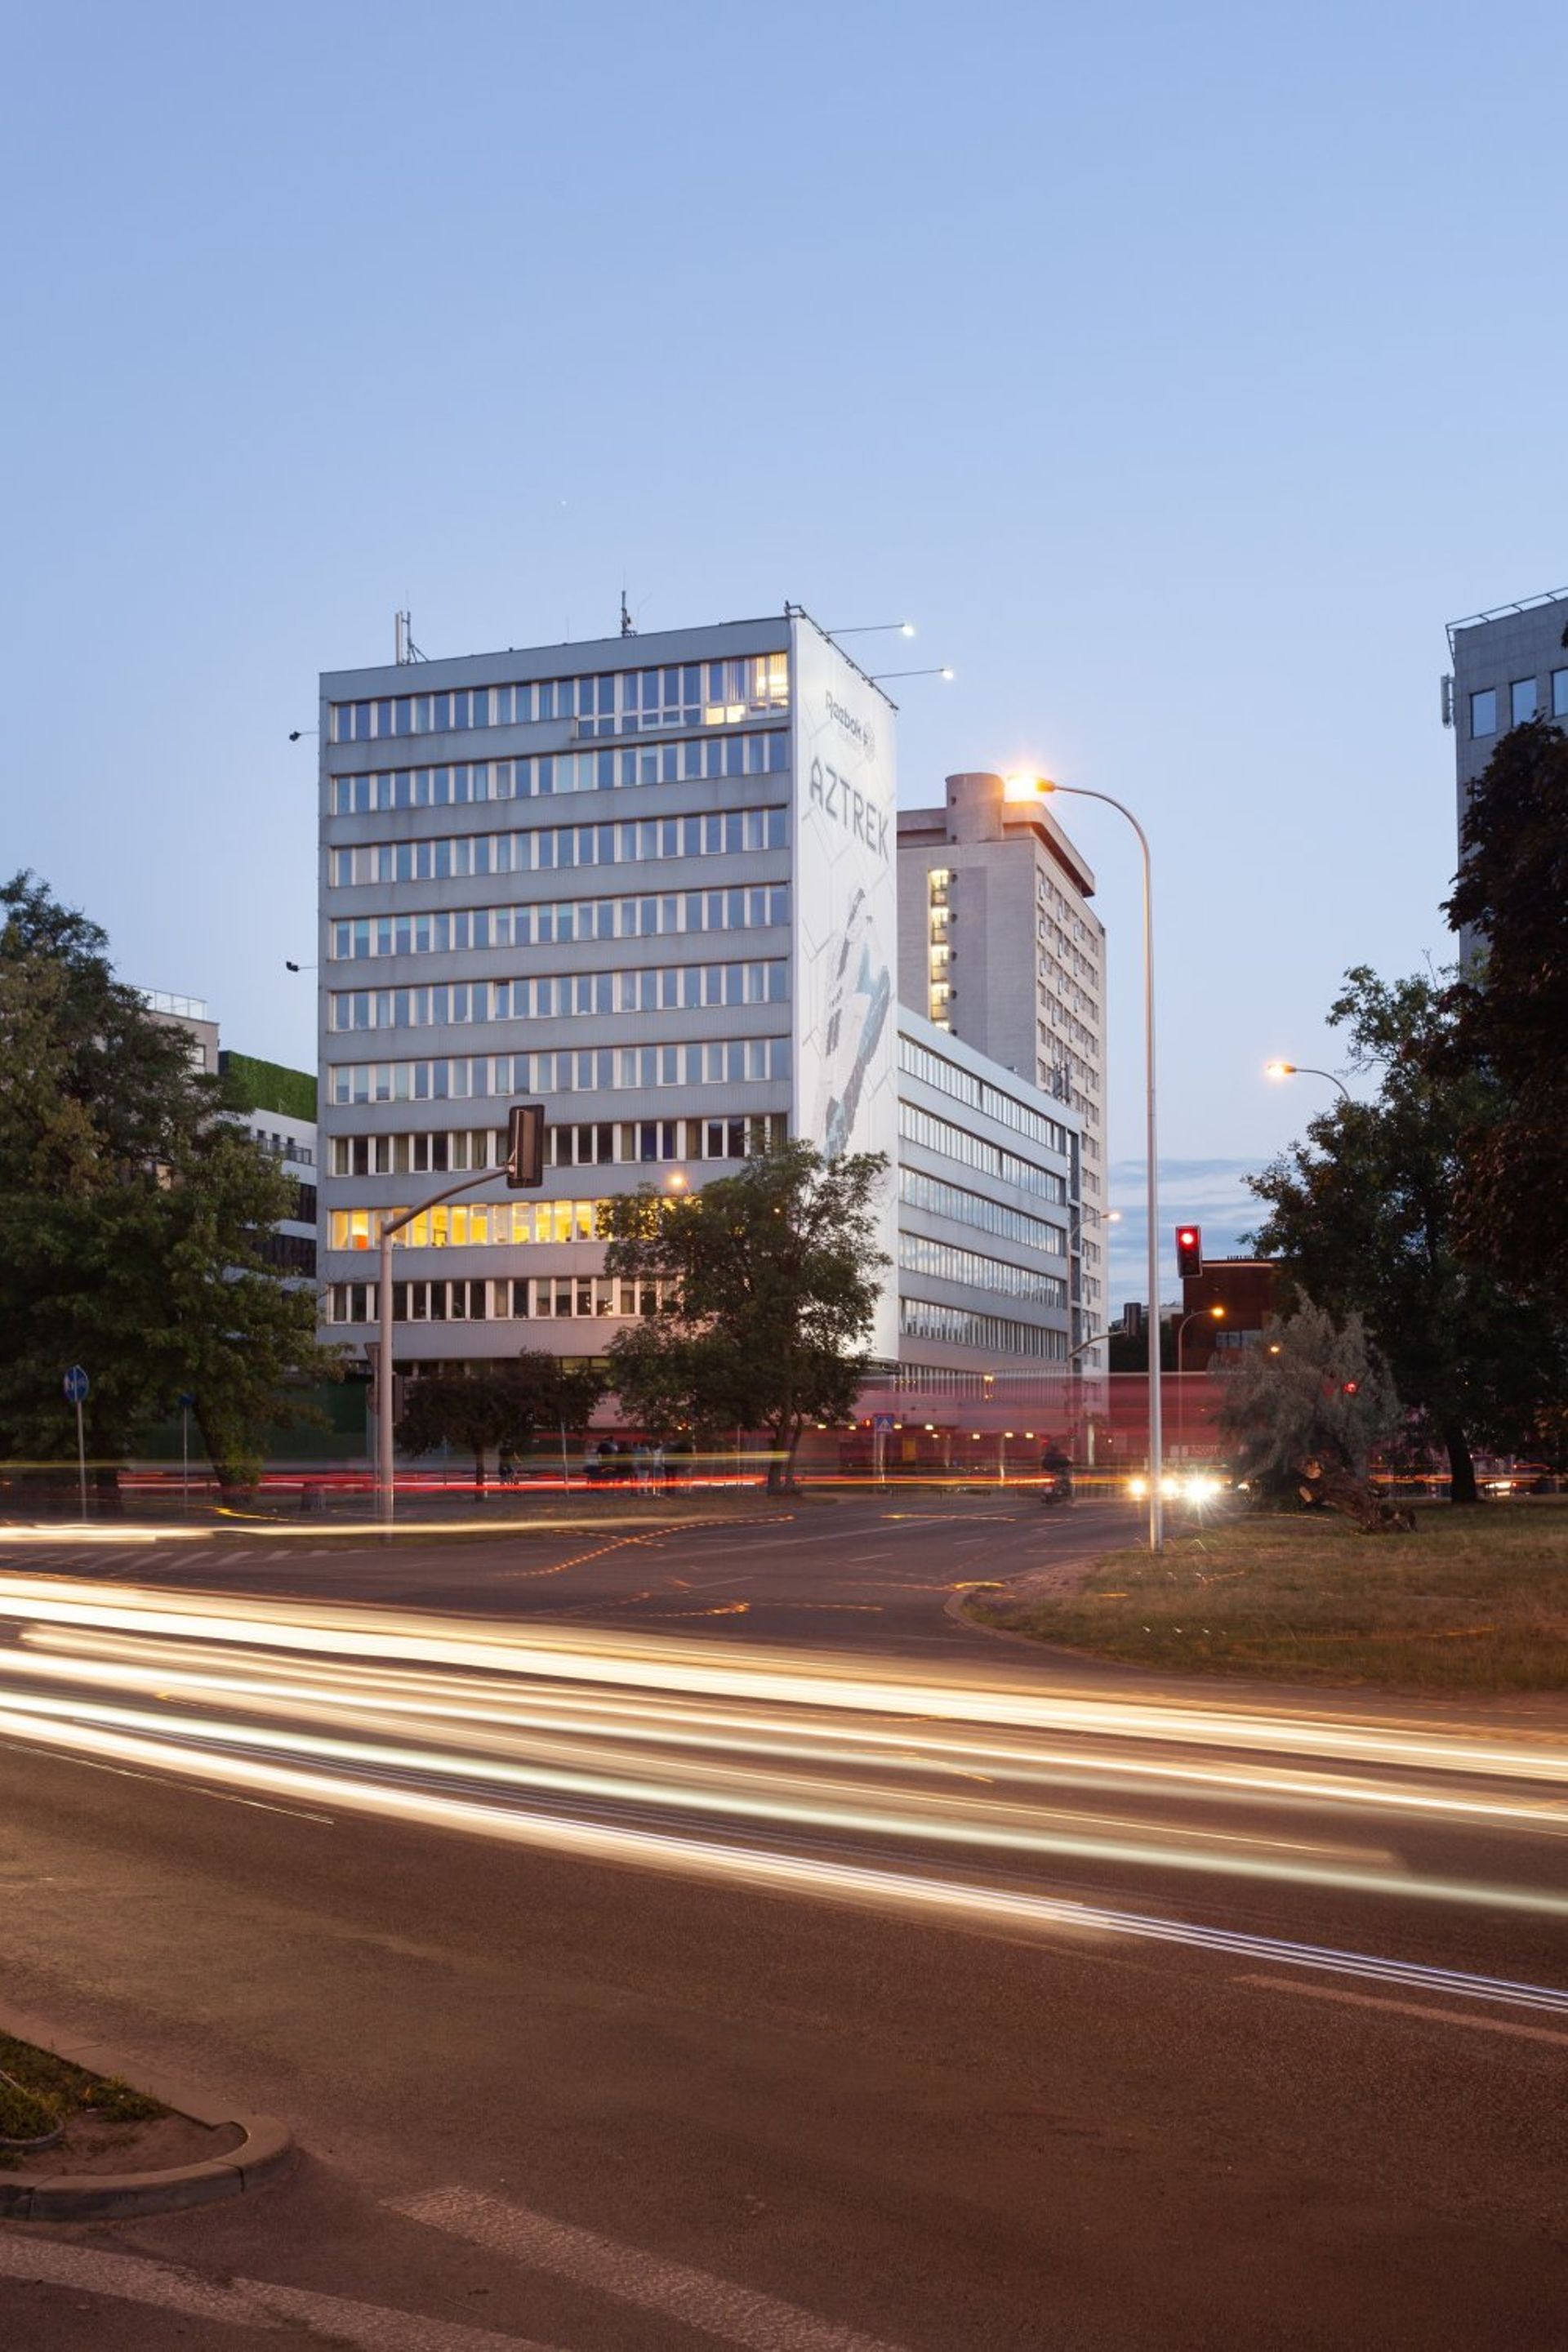  Biurowiec w centrum Warszawy zostanie przekształcony w nowoczesny dom studencki